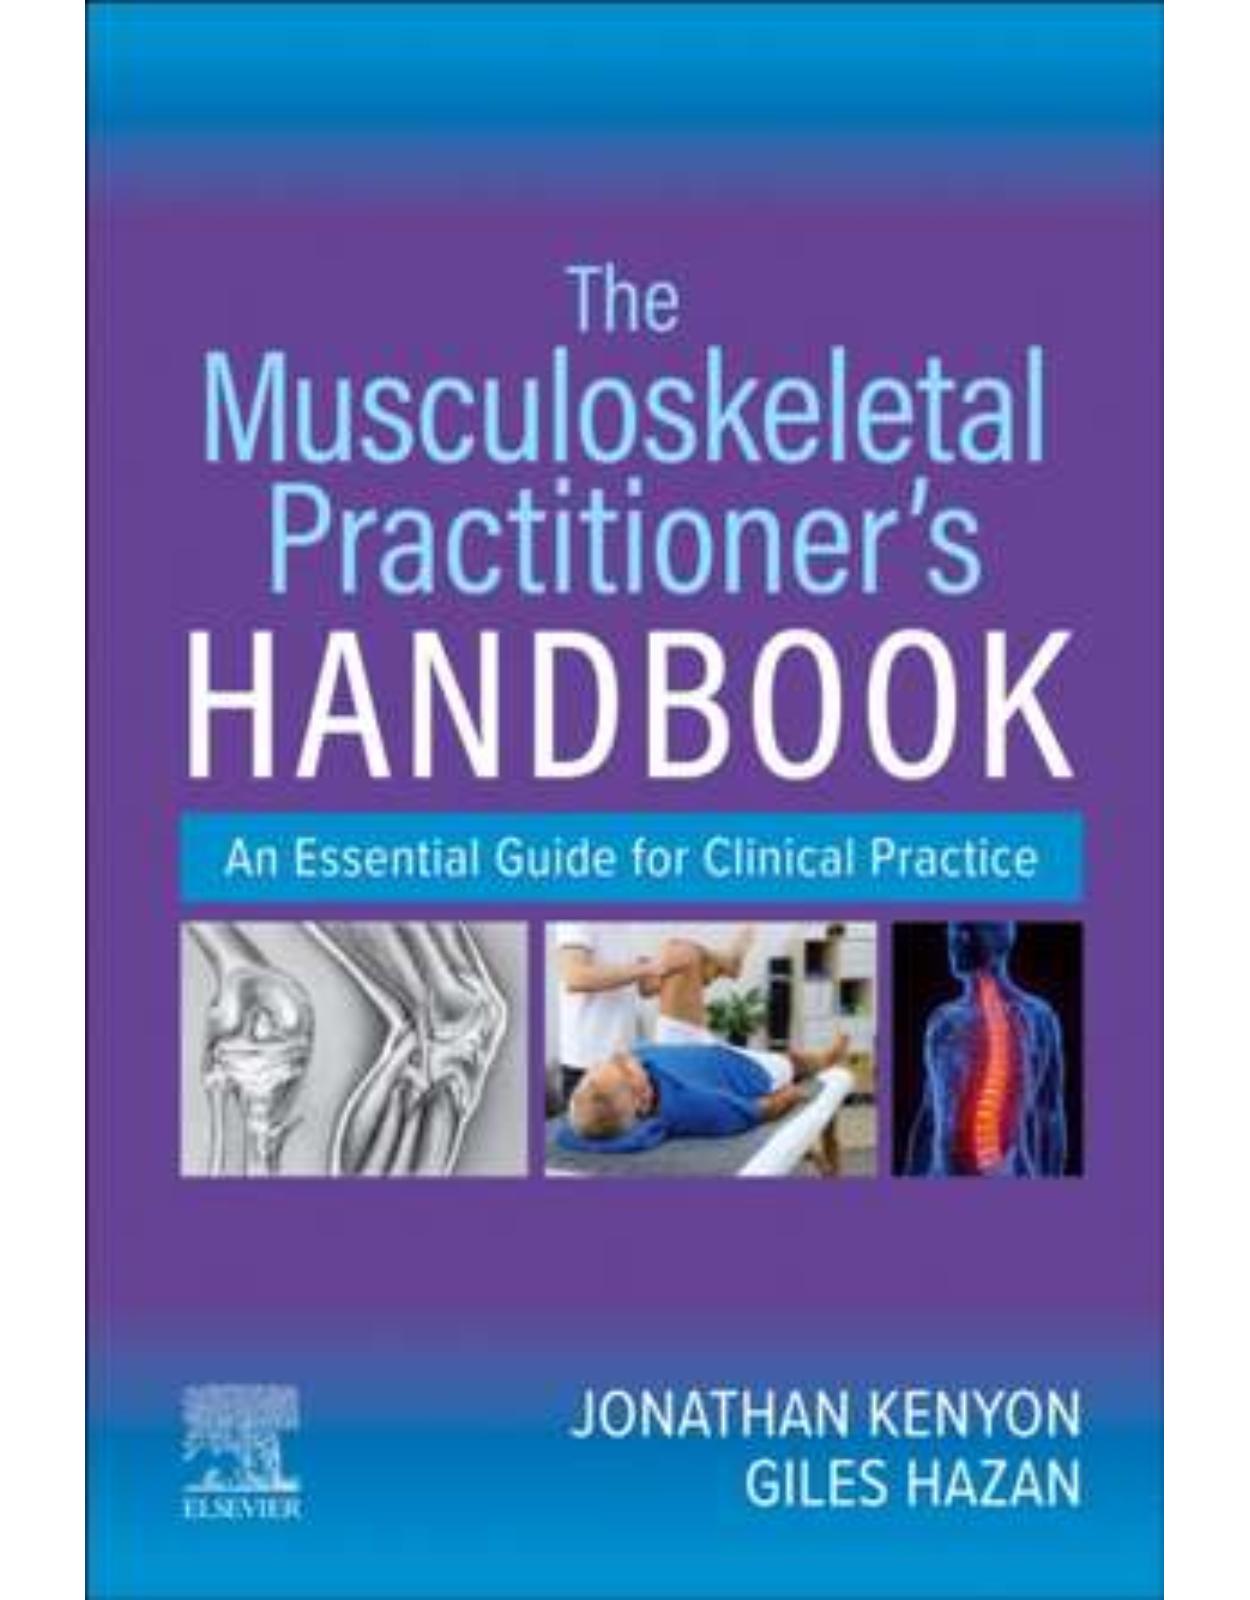 The Musculoskeletal Practitioner’s Handbook